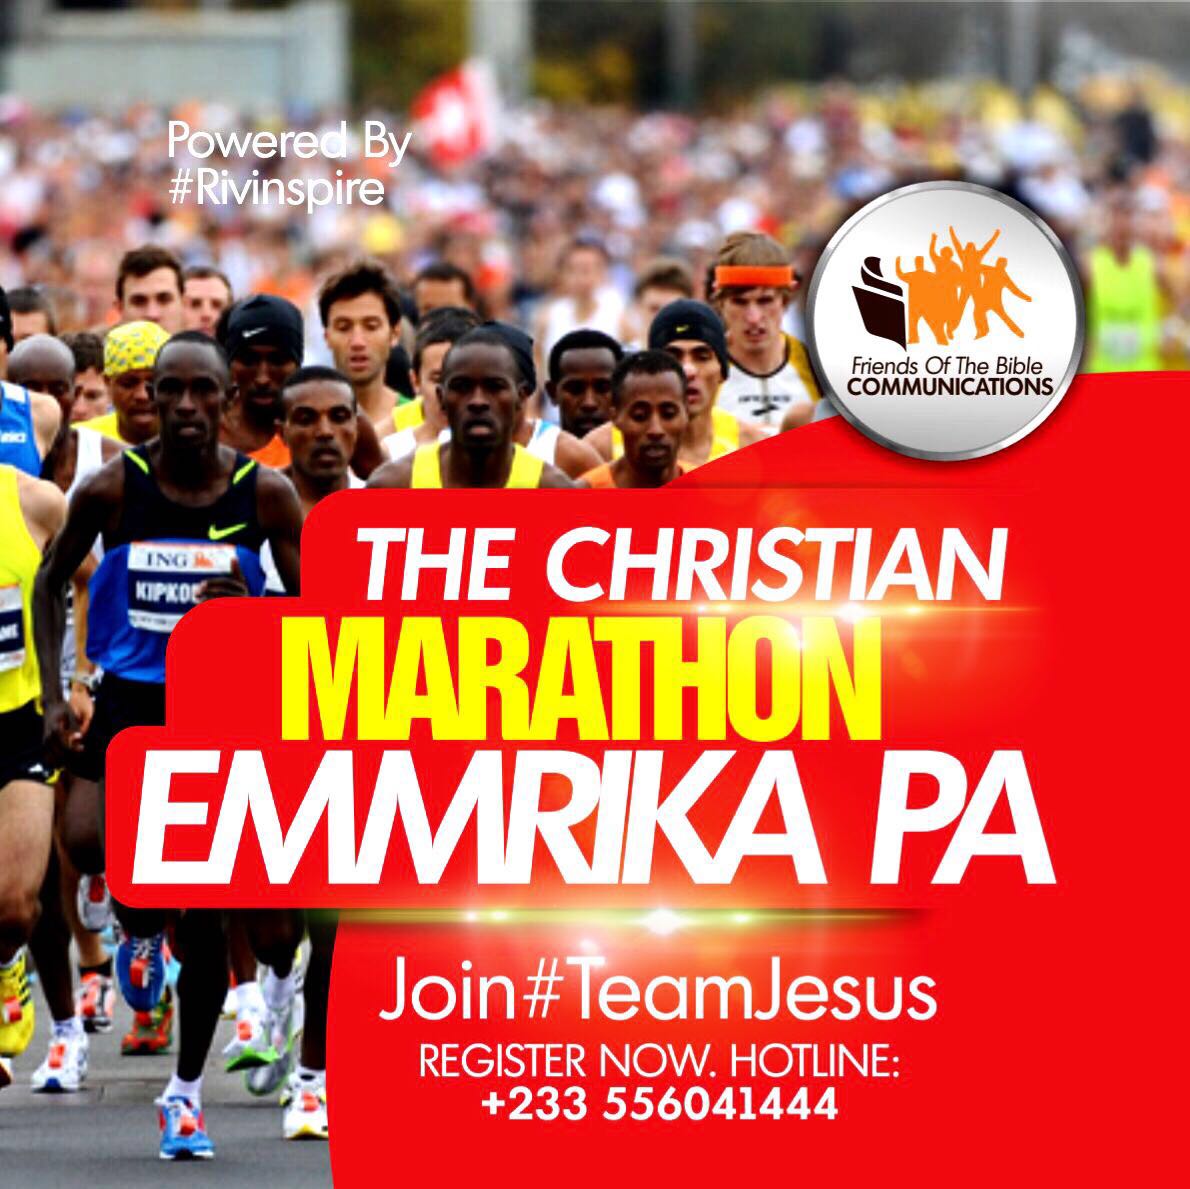 Ghana’s First Christian Marathon ‘EmmrikaPa’ Calls for Participation